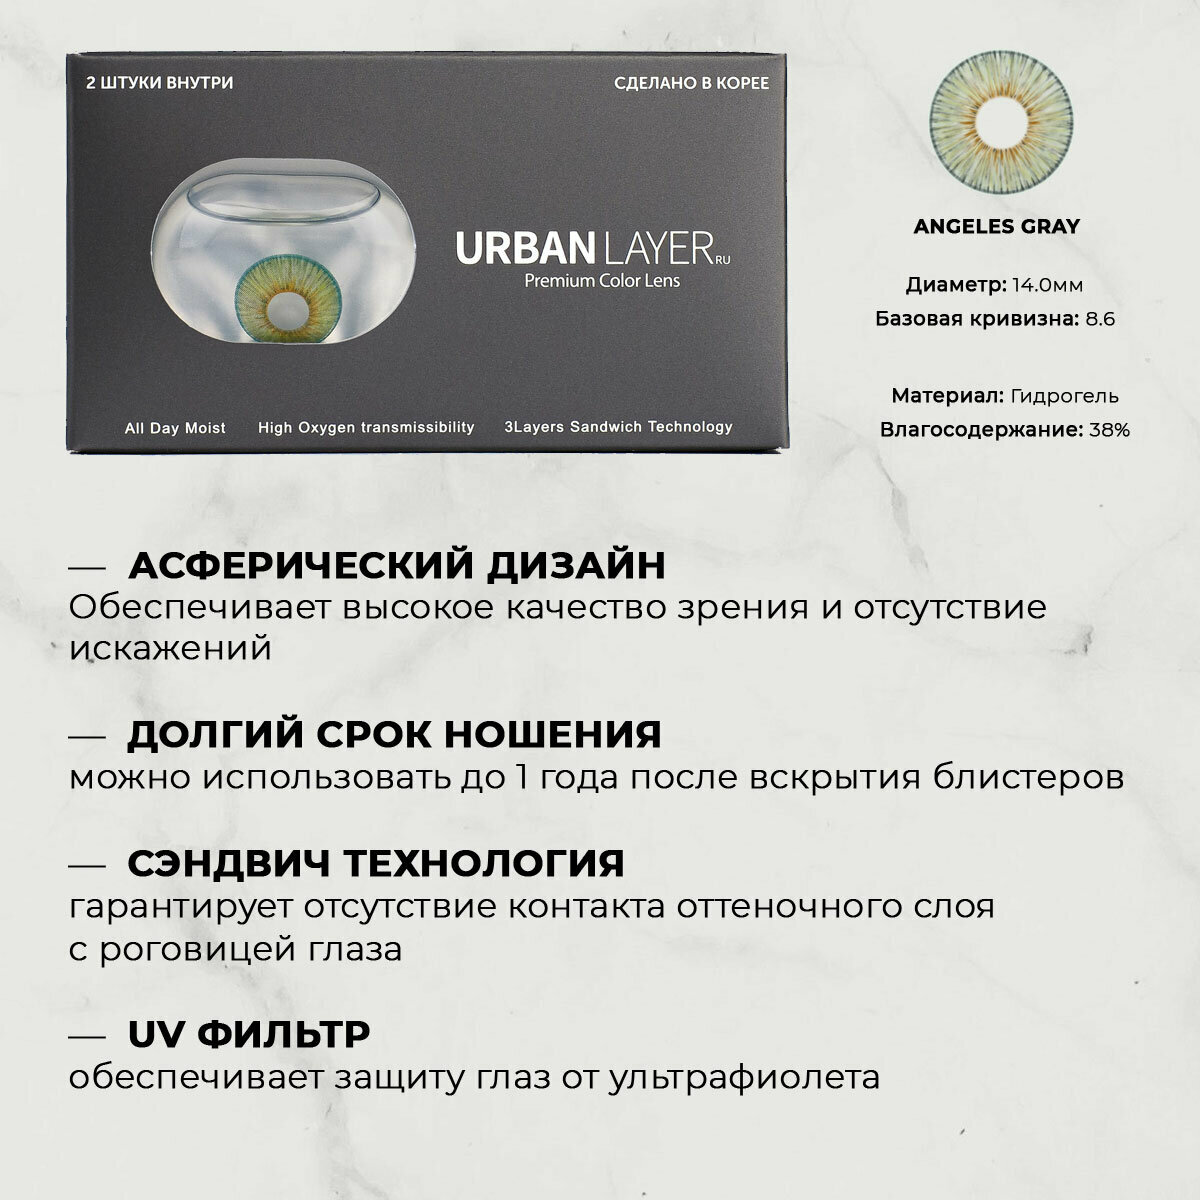 Цветные контактные линзы URBAN LAYER ru Angeles Gray -5.5 / 14.0 / 8.6 / 2шт.